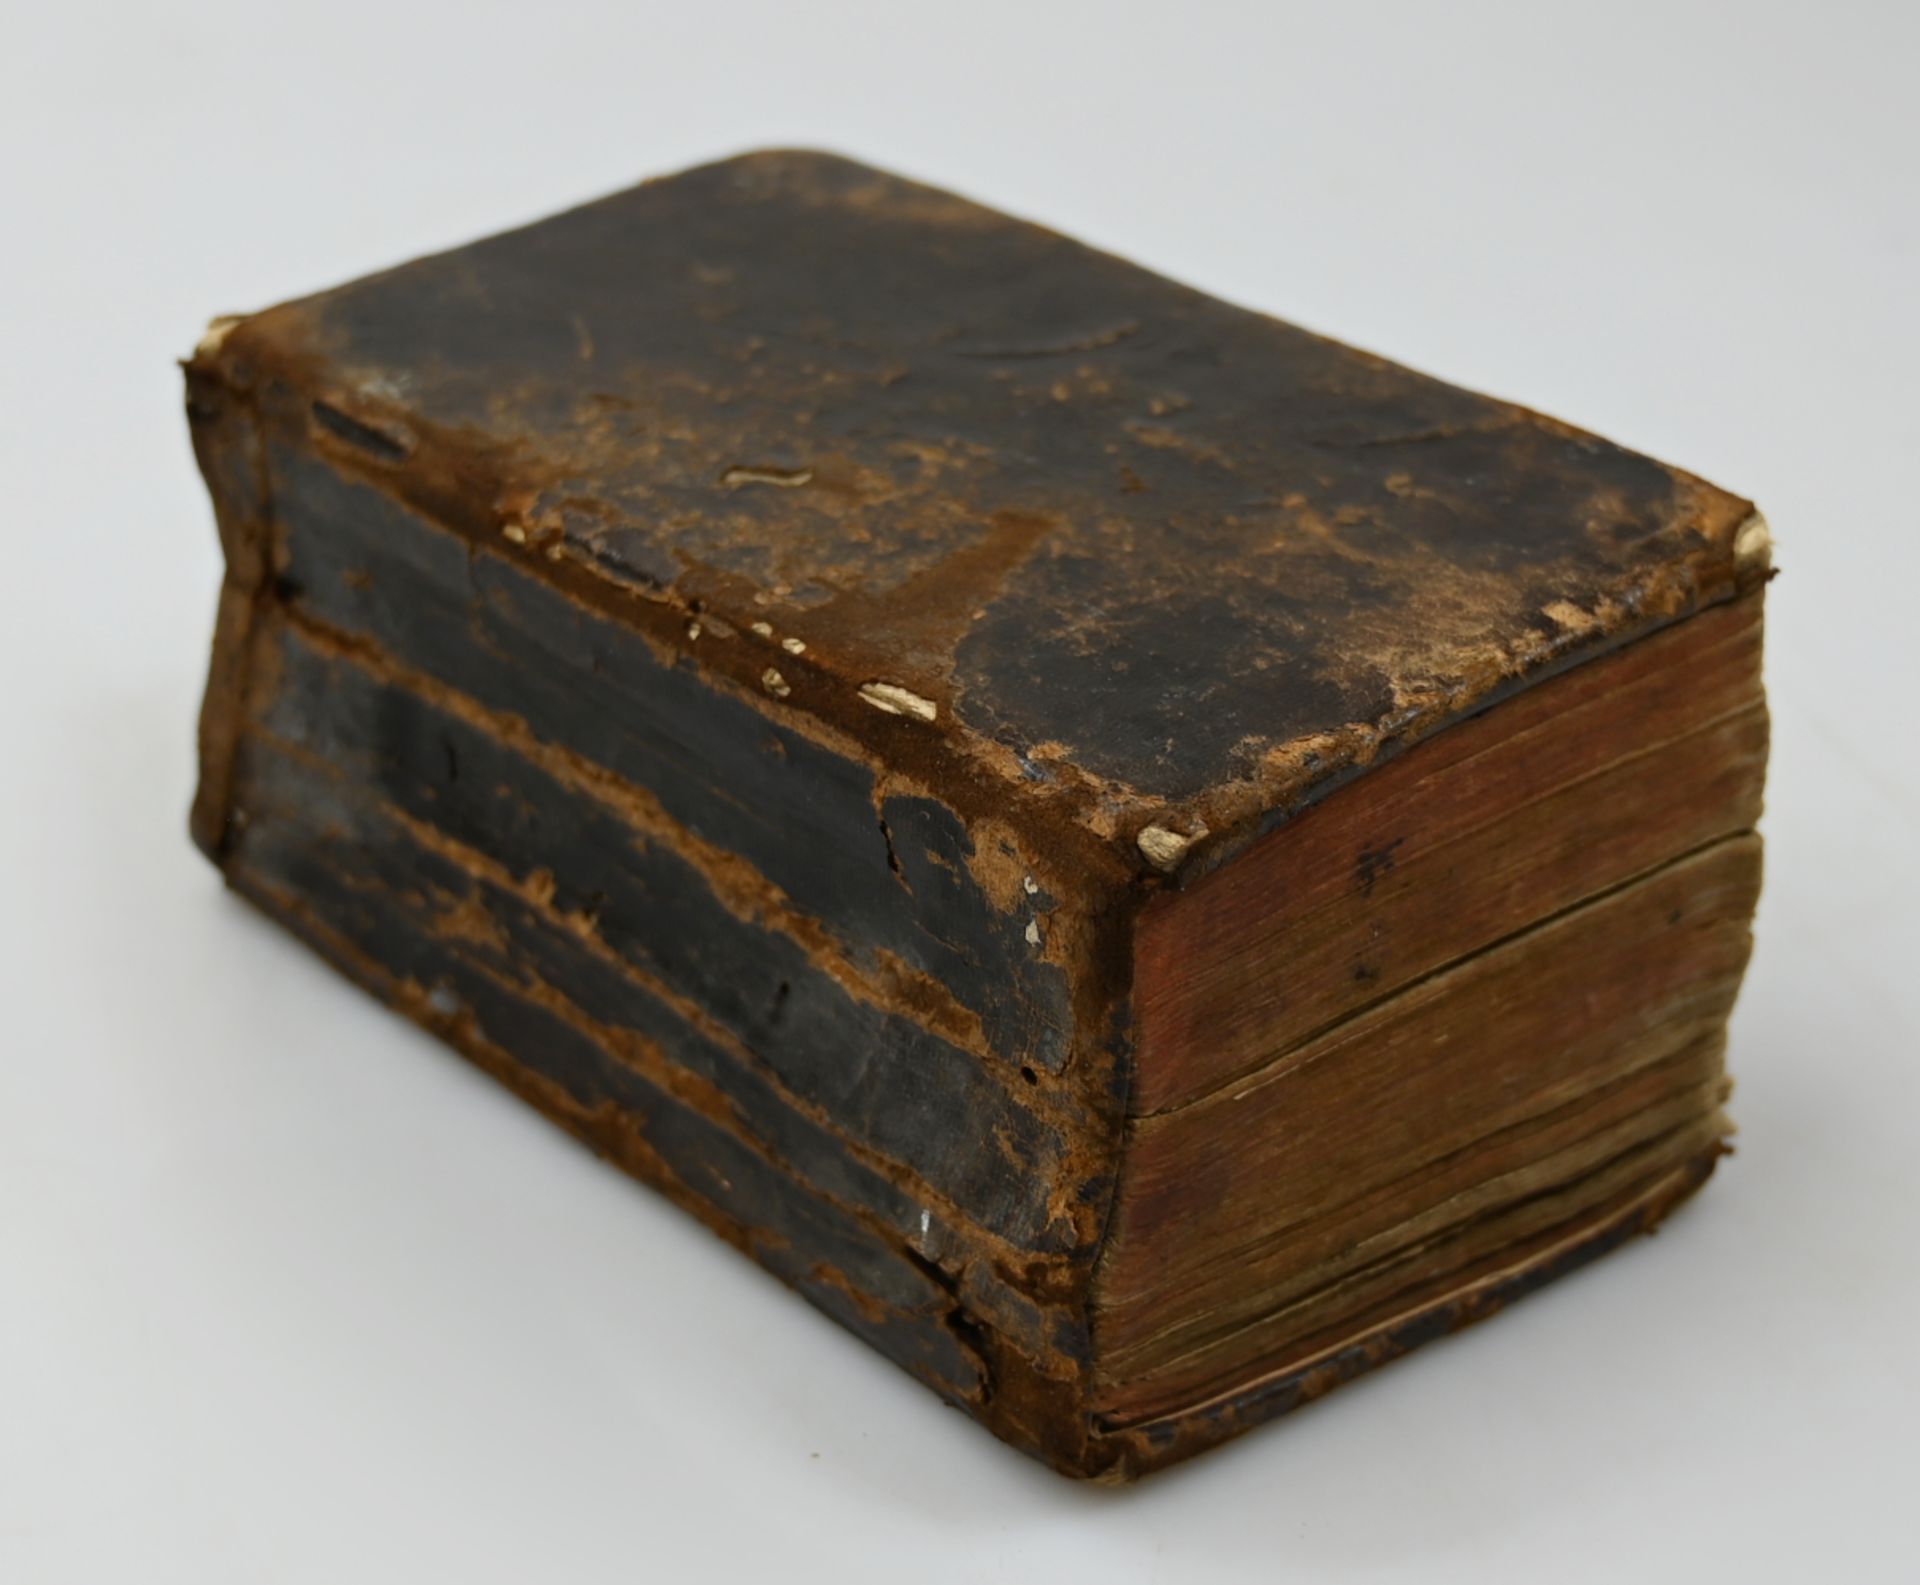 1 Bibel wohl "Altes und Neues Testament" verdeutscht von Matin LUTHER, Sulzbach J.E.v. Seidel 1828, - Image 2 of 2